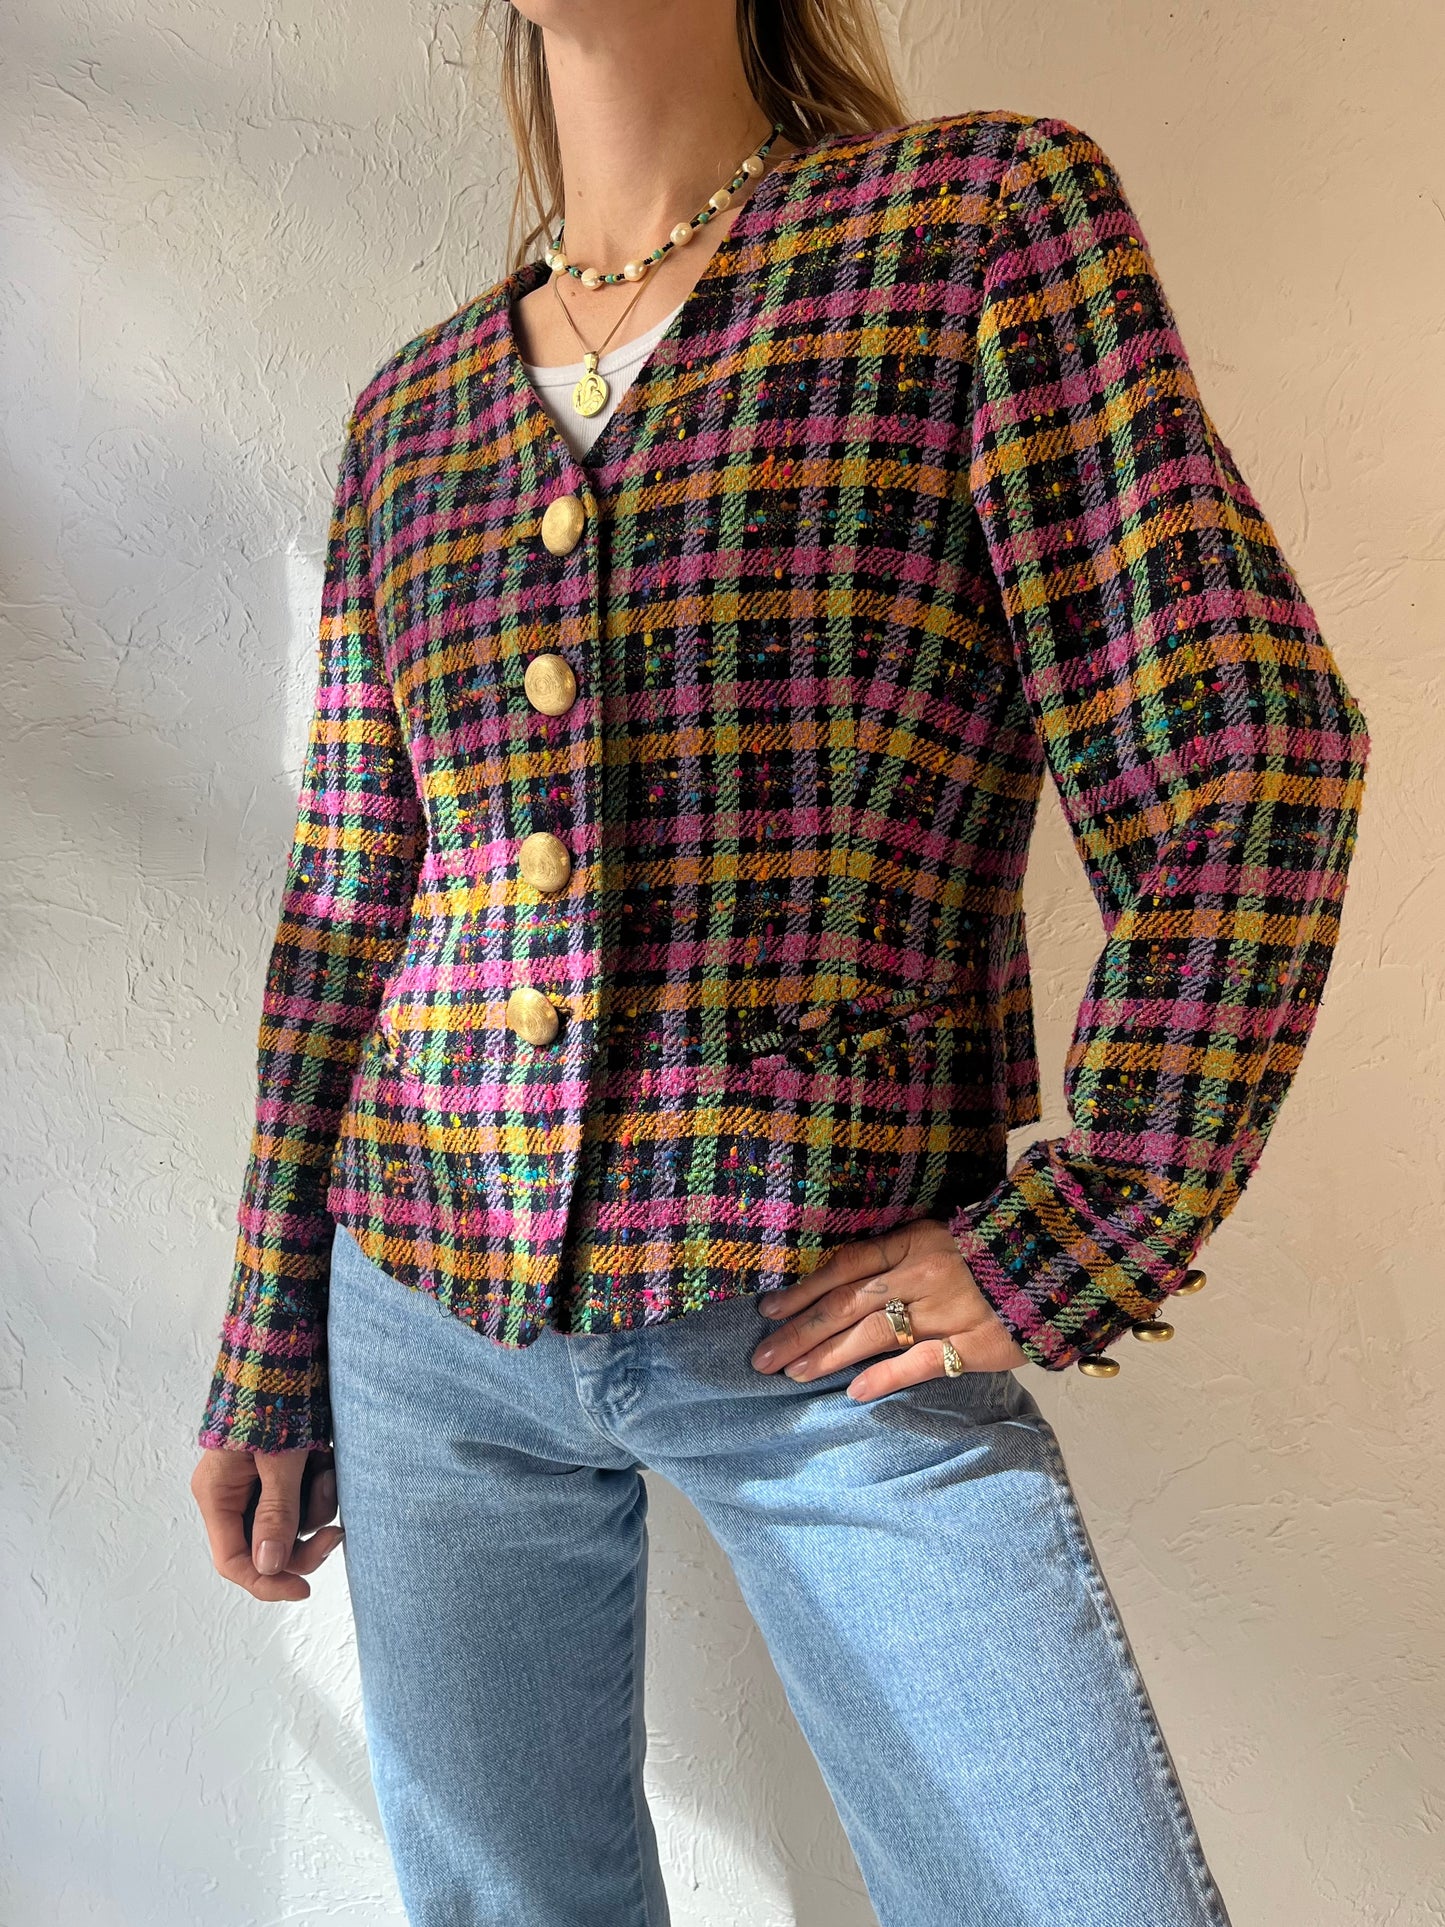 90s 'Studio J' Rainbow Tweed Jacket / Medium